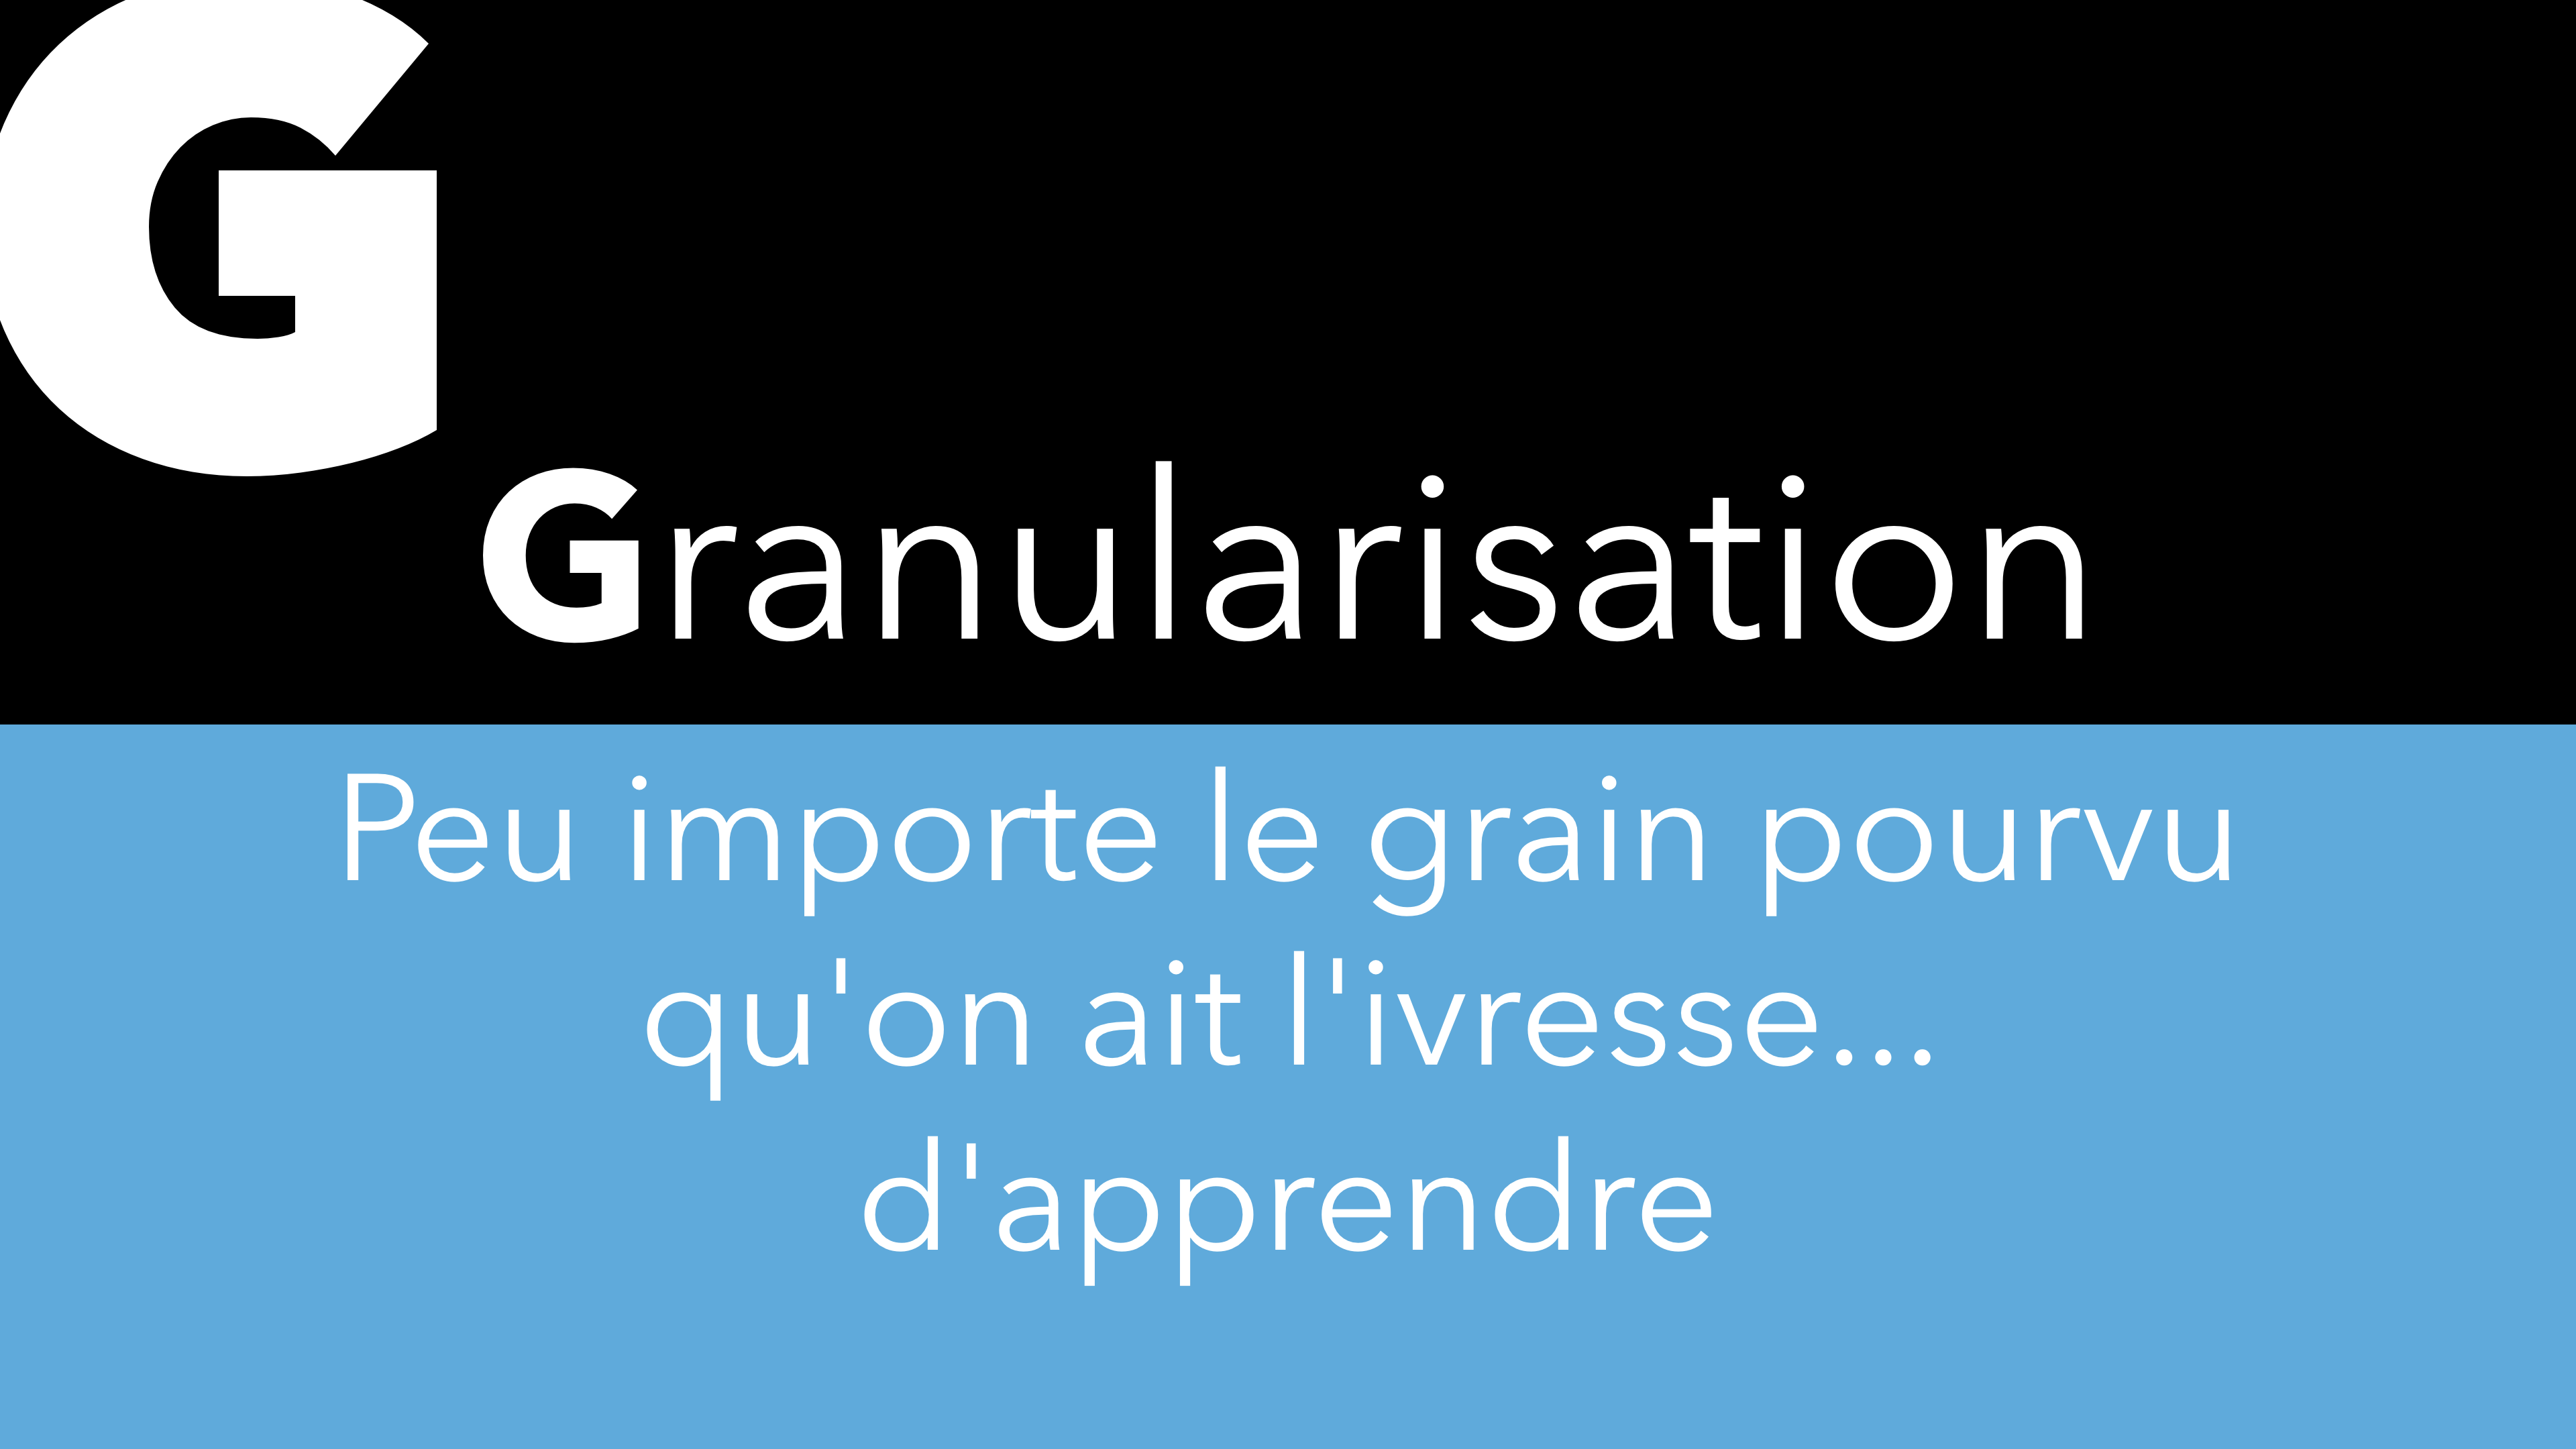 G – Granularisation